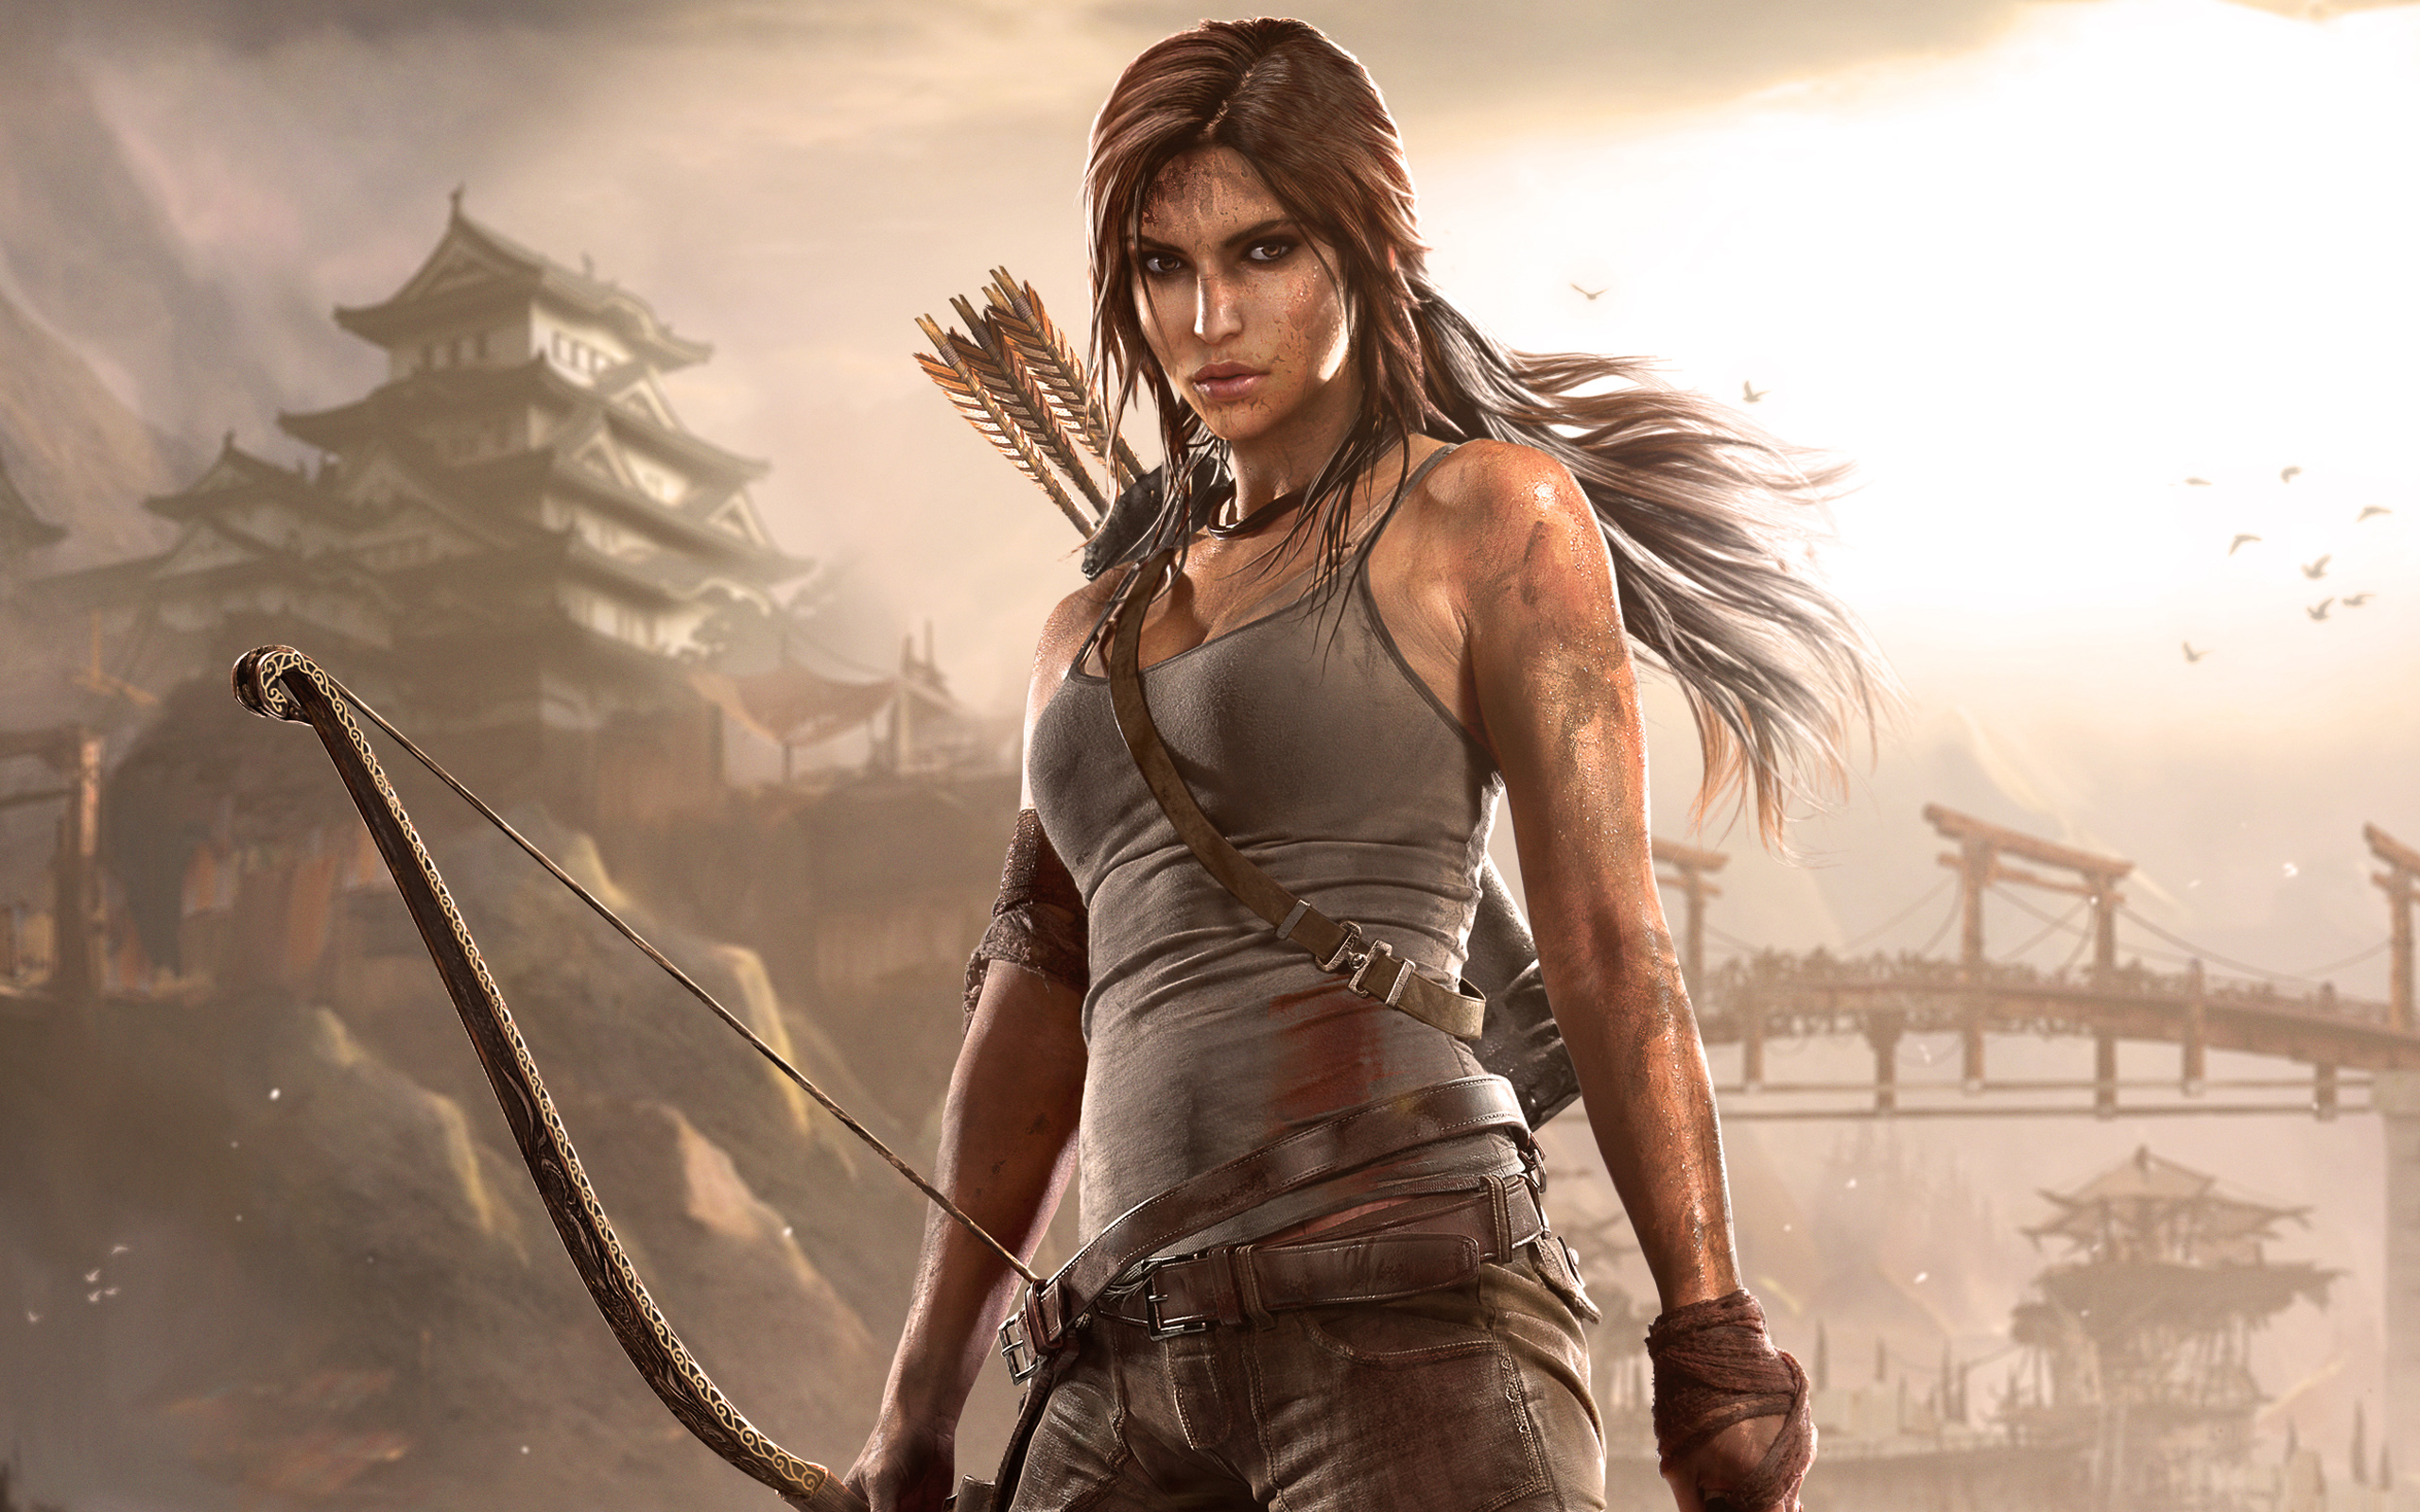 Nowości filmowe: Tomb Raider, Player One, Twarz i inne